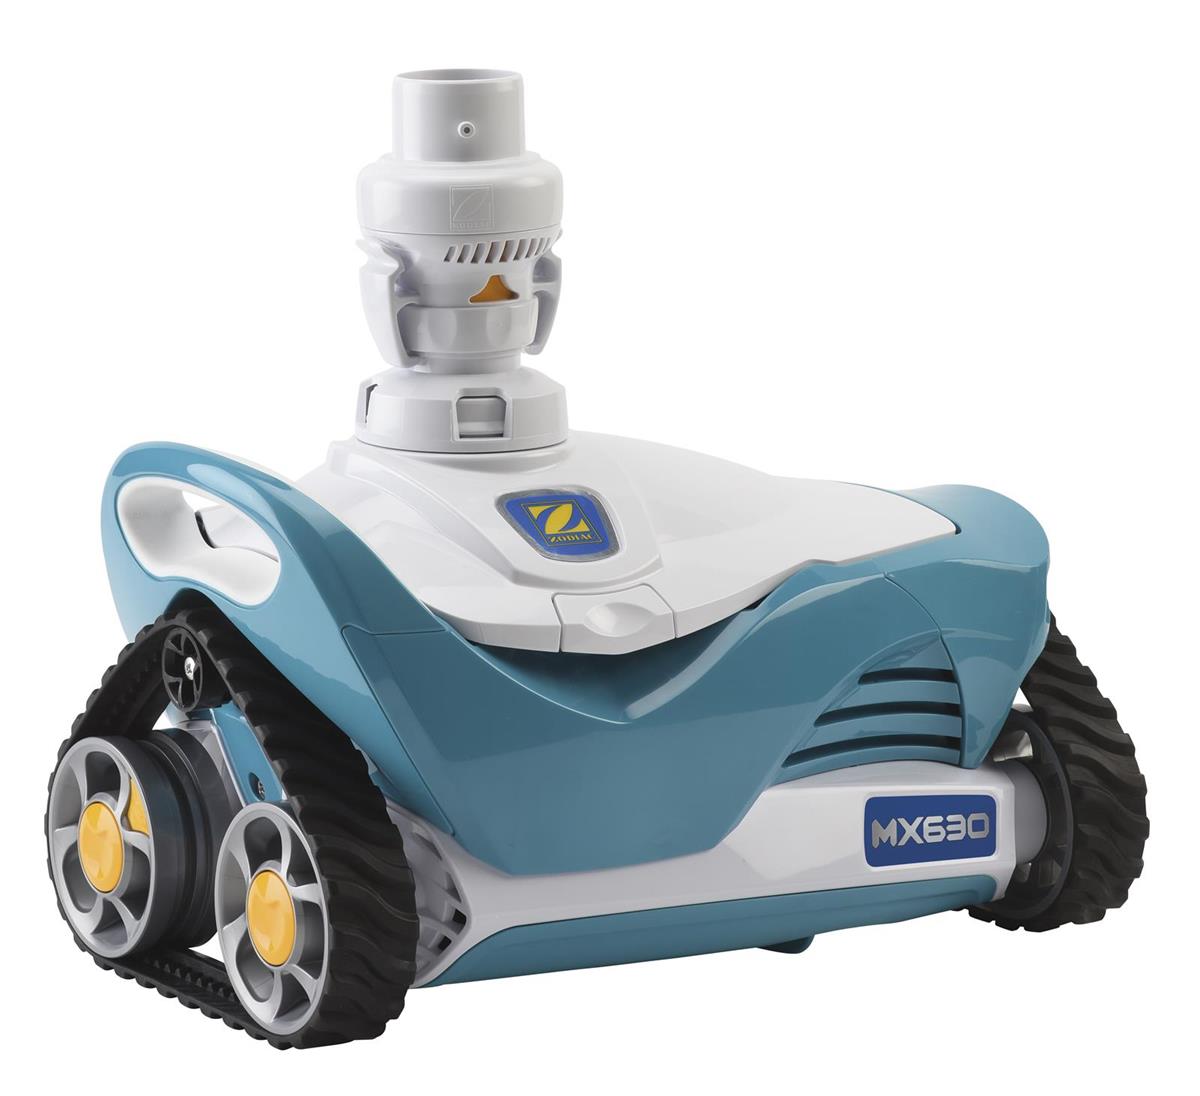 Robot aspirateur zodiac mx630_0